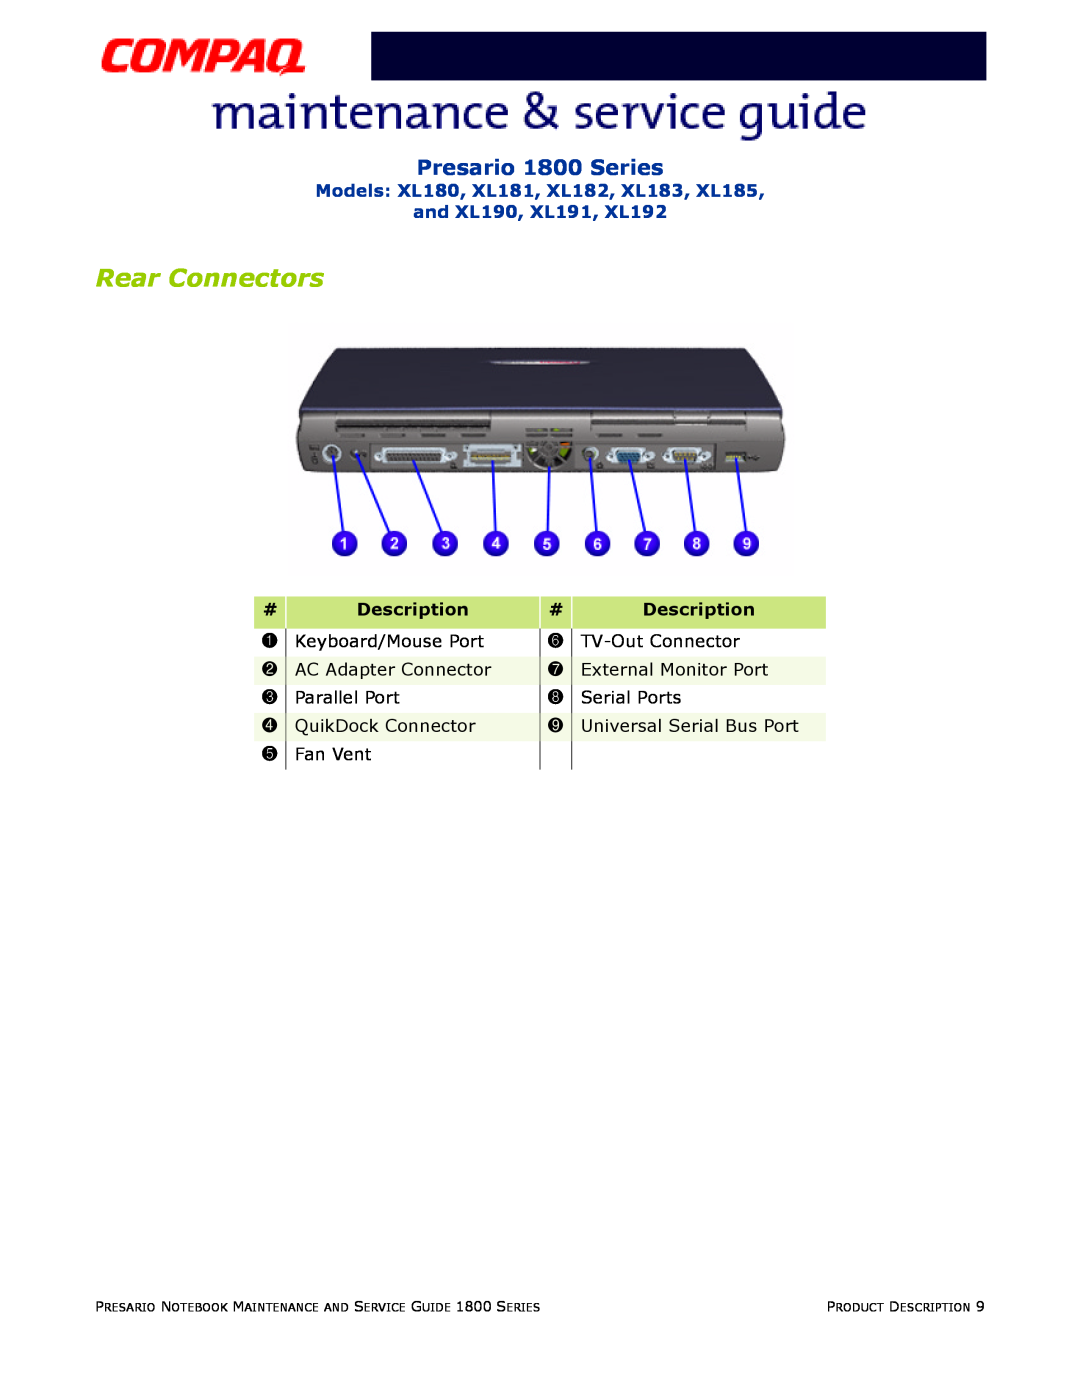 Compaq Rear Connectors, Presario 1800 Series, Models XL180, XL181, XL182, XL183, XL185 and XL190, XL191, XL192 